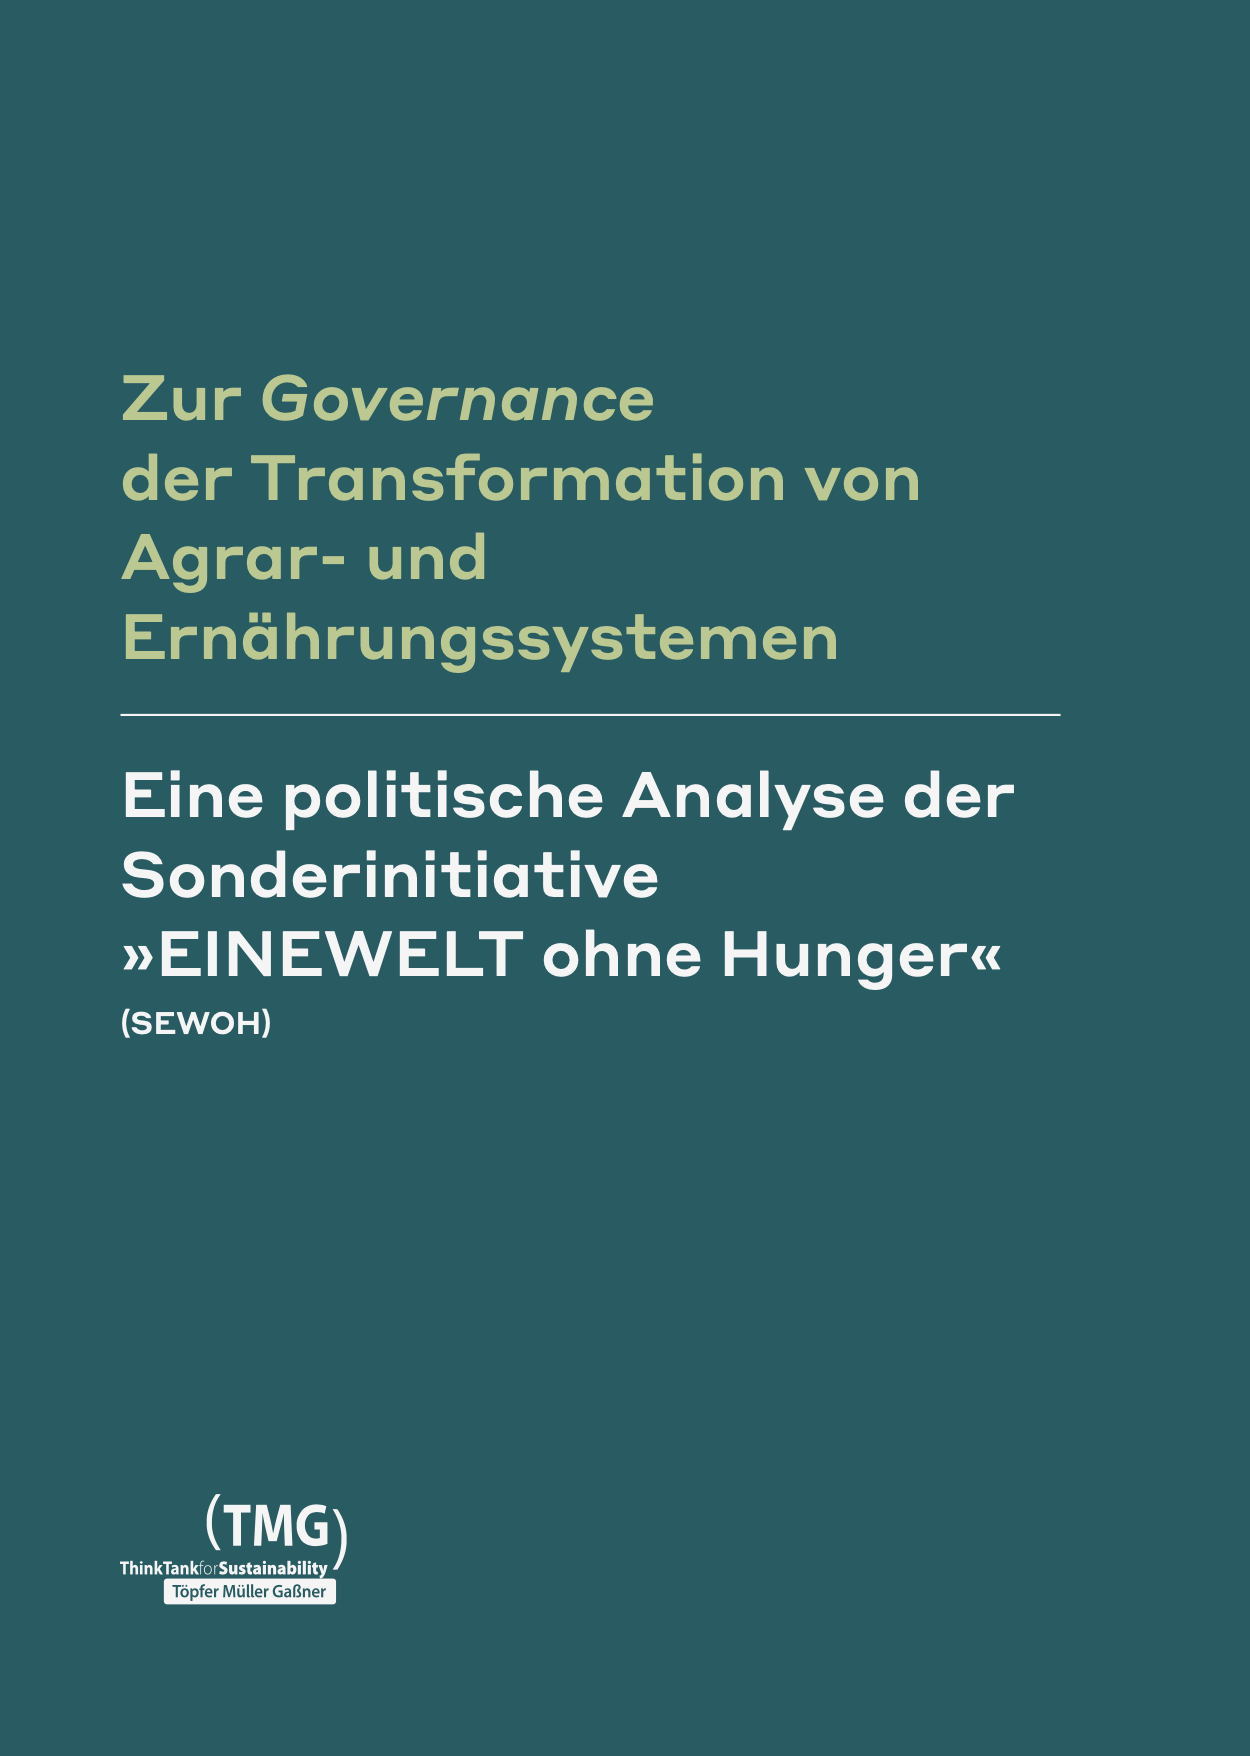 Zur Governance der Transformation von Agrar- und Ernährungssystemen - Eine politische Analyse der Sonderinitiative »EINEWELT ohne Hunger« (SEWOH)